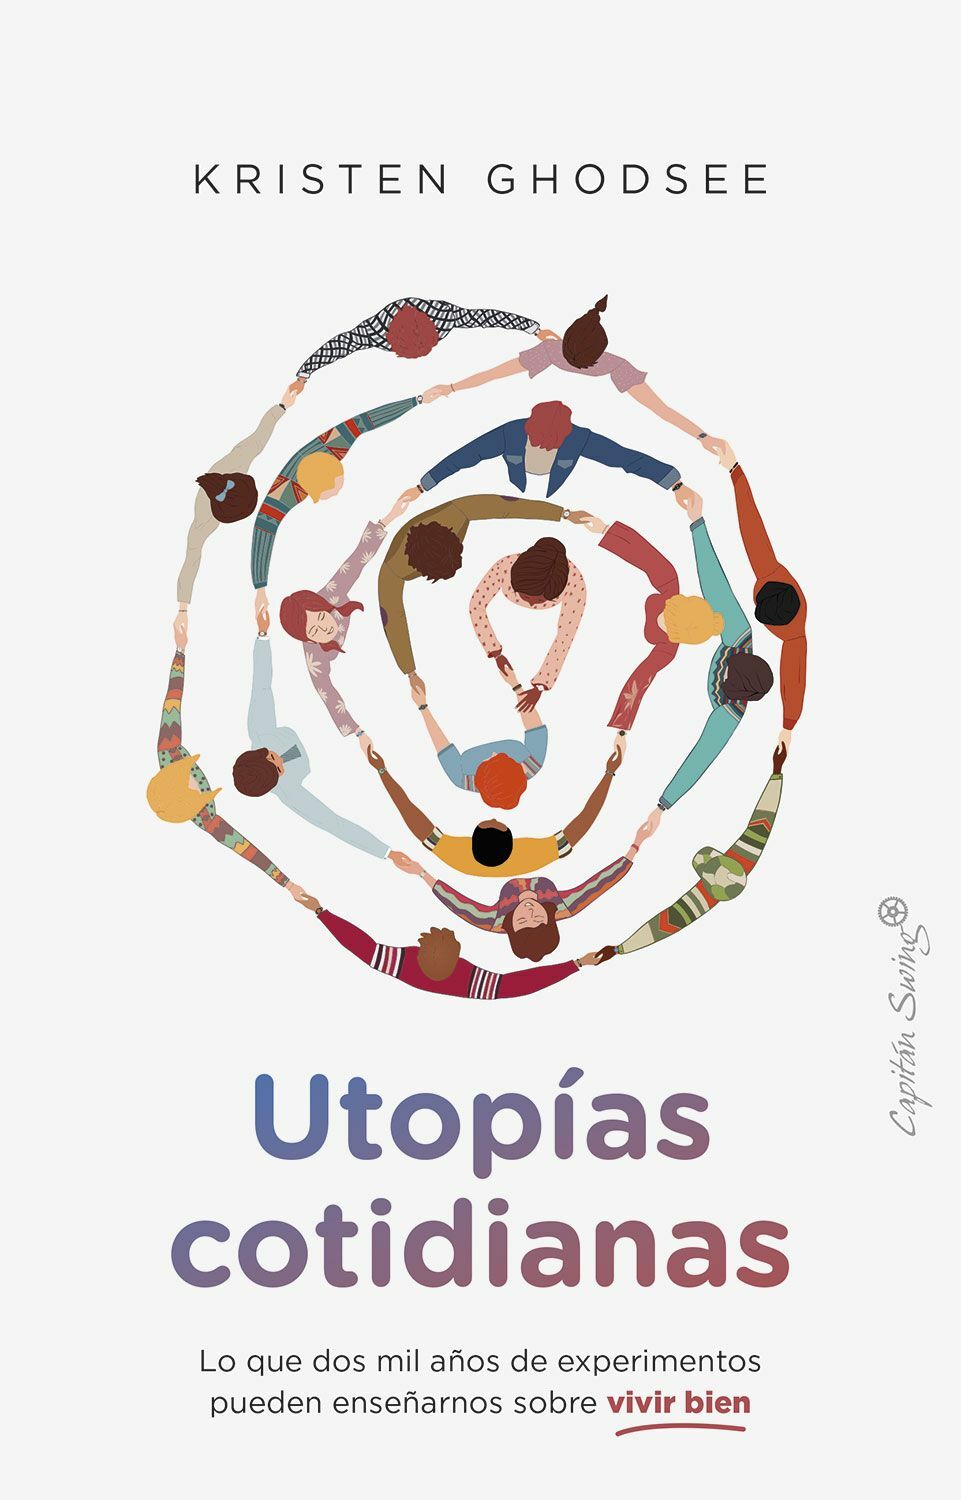 Kristen-Ghodsee-Utopias-cotidianas